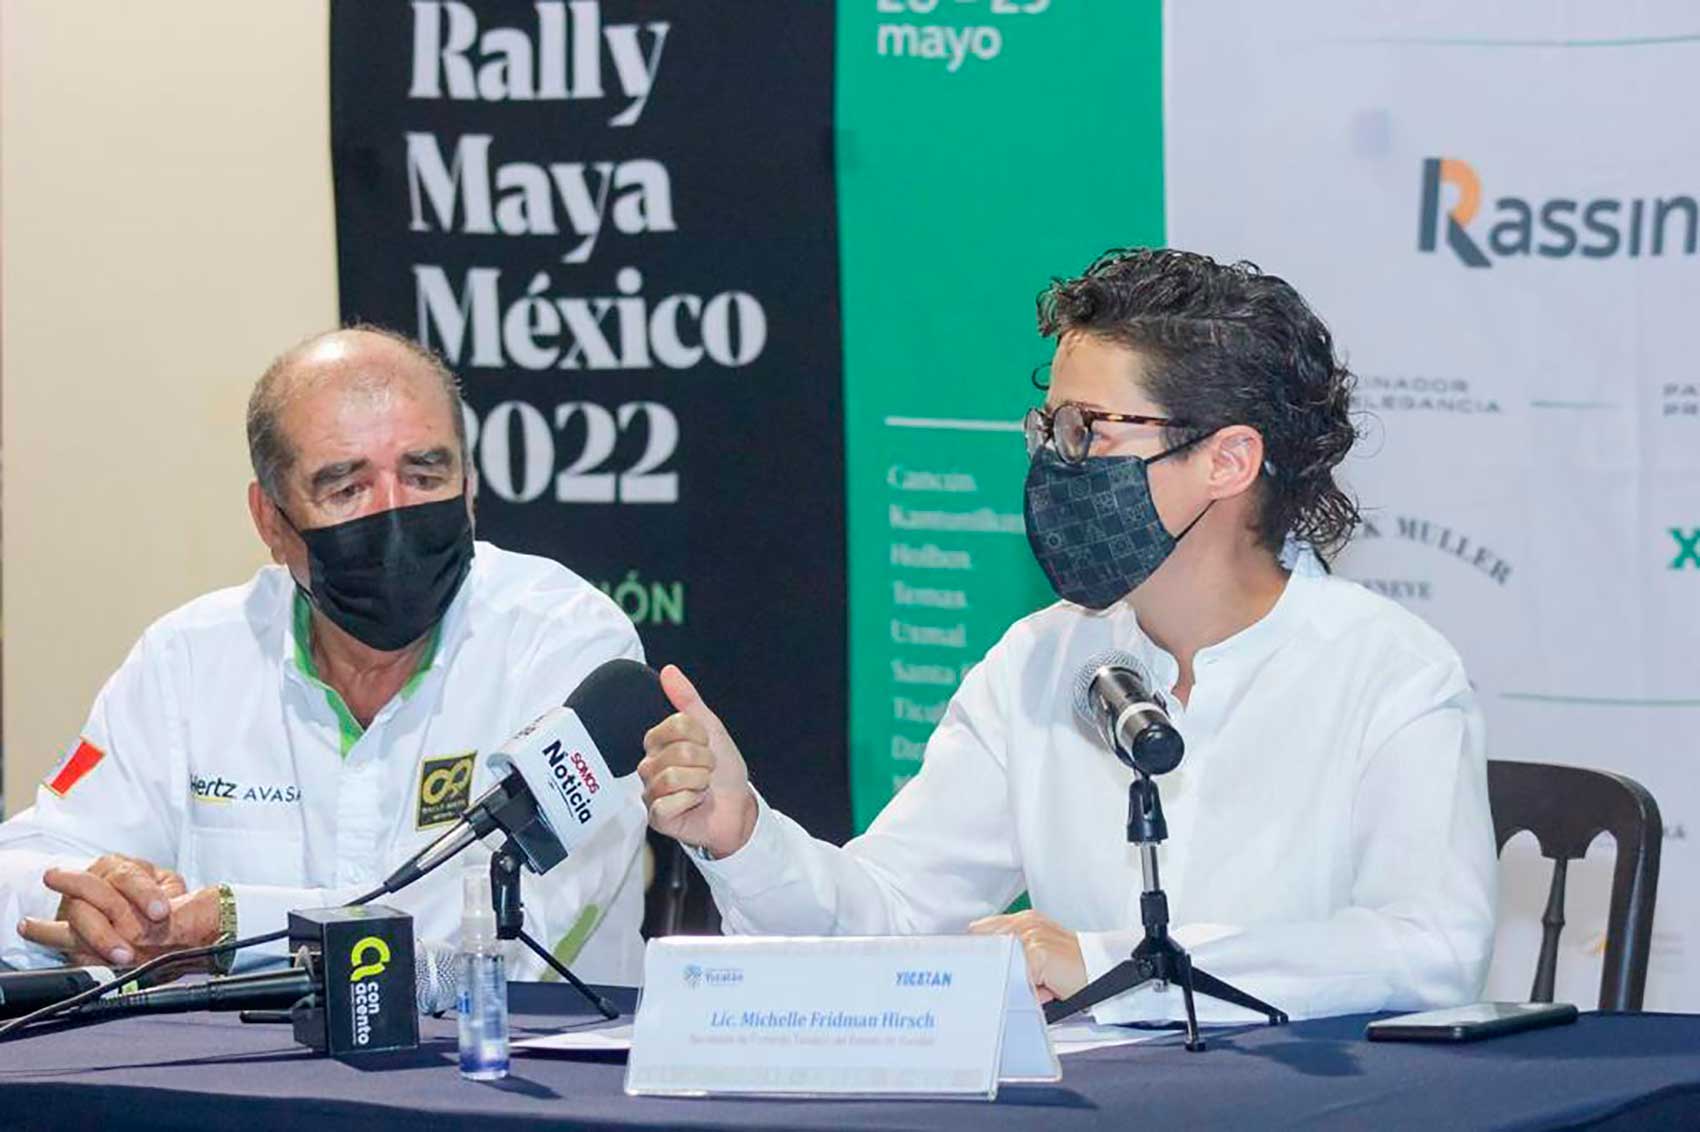 Rally-Maya-Yucatan-2022